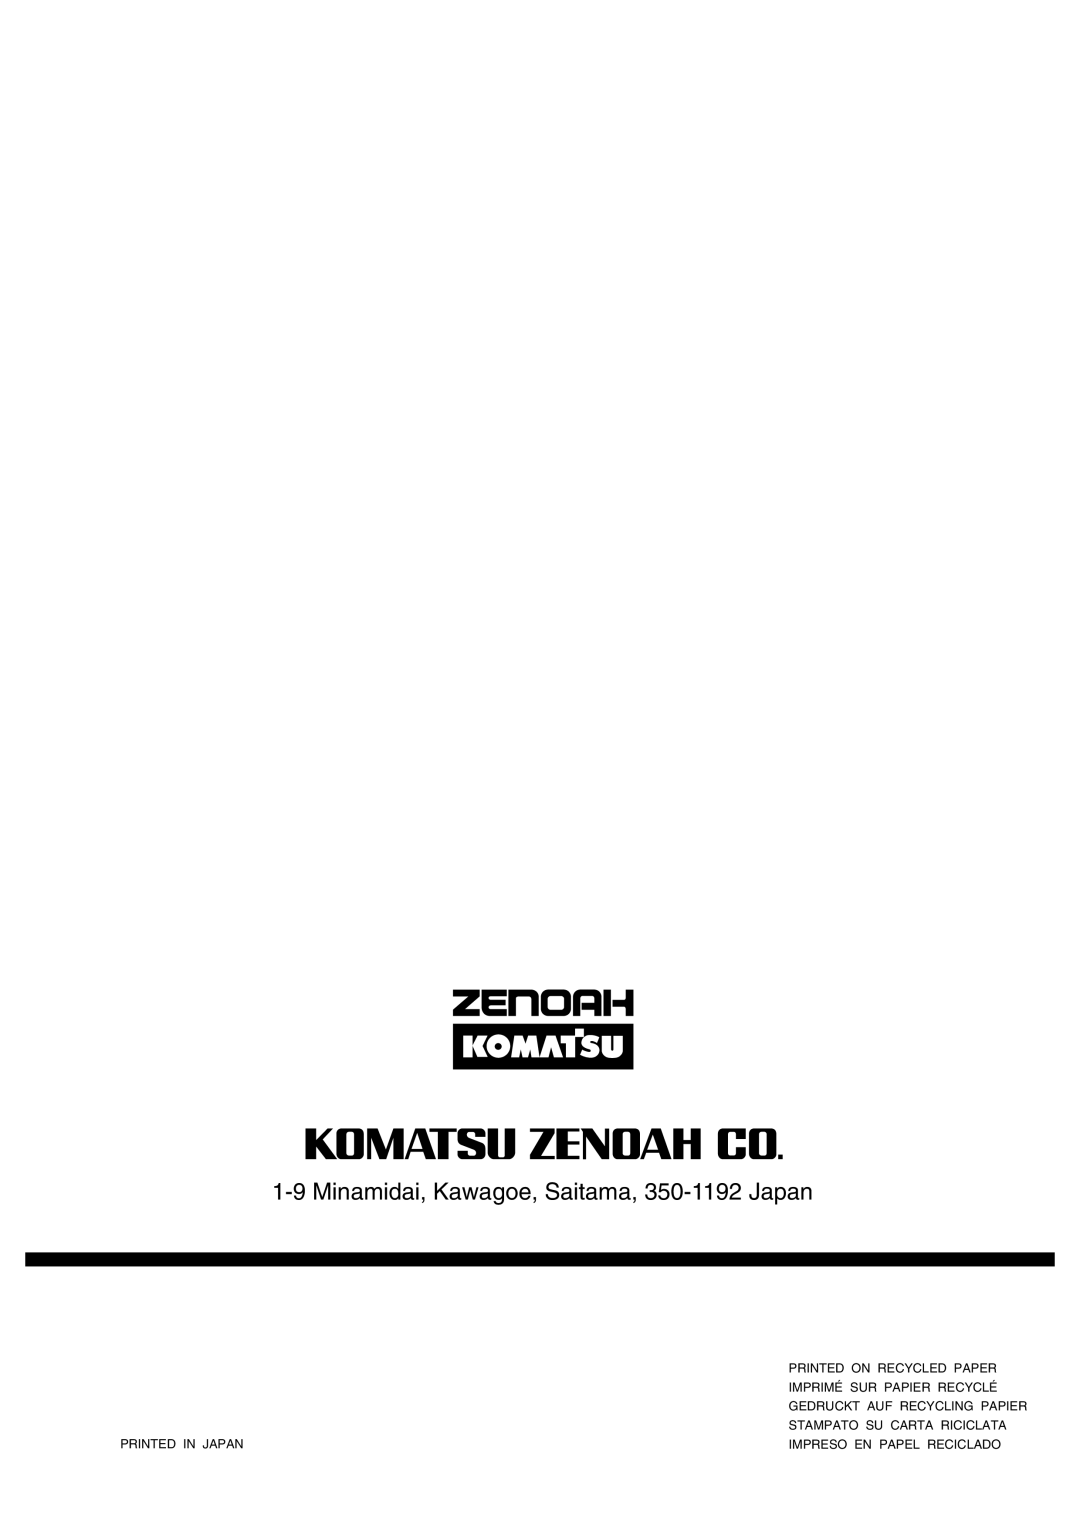 Zenoah G5200 manual 1-9Minamidai, Kawagoe, Saitama, 350-1192Japan, Printed On Recycled Paper, Imprimé Sur Papier Recyclé 